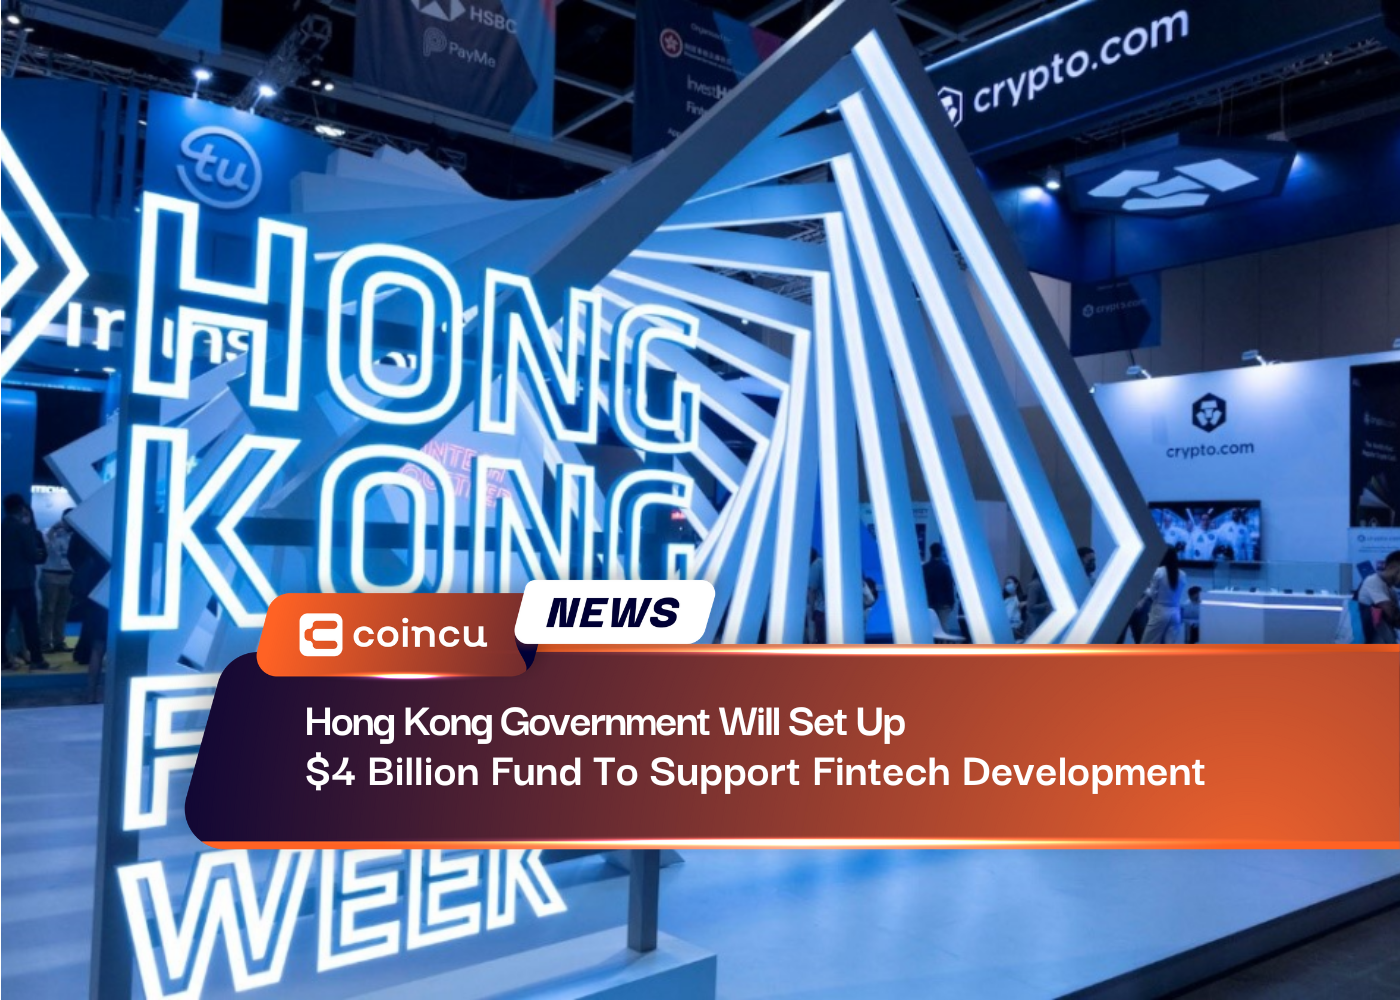 Hong Kong Government Will Set Up $4 Billion Fund To Support Fintech Development